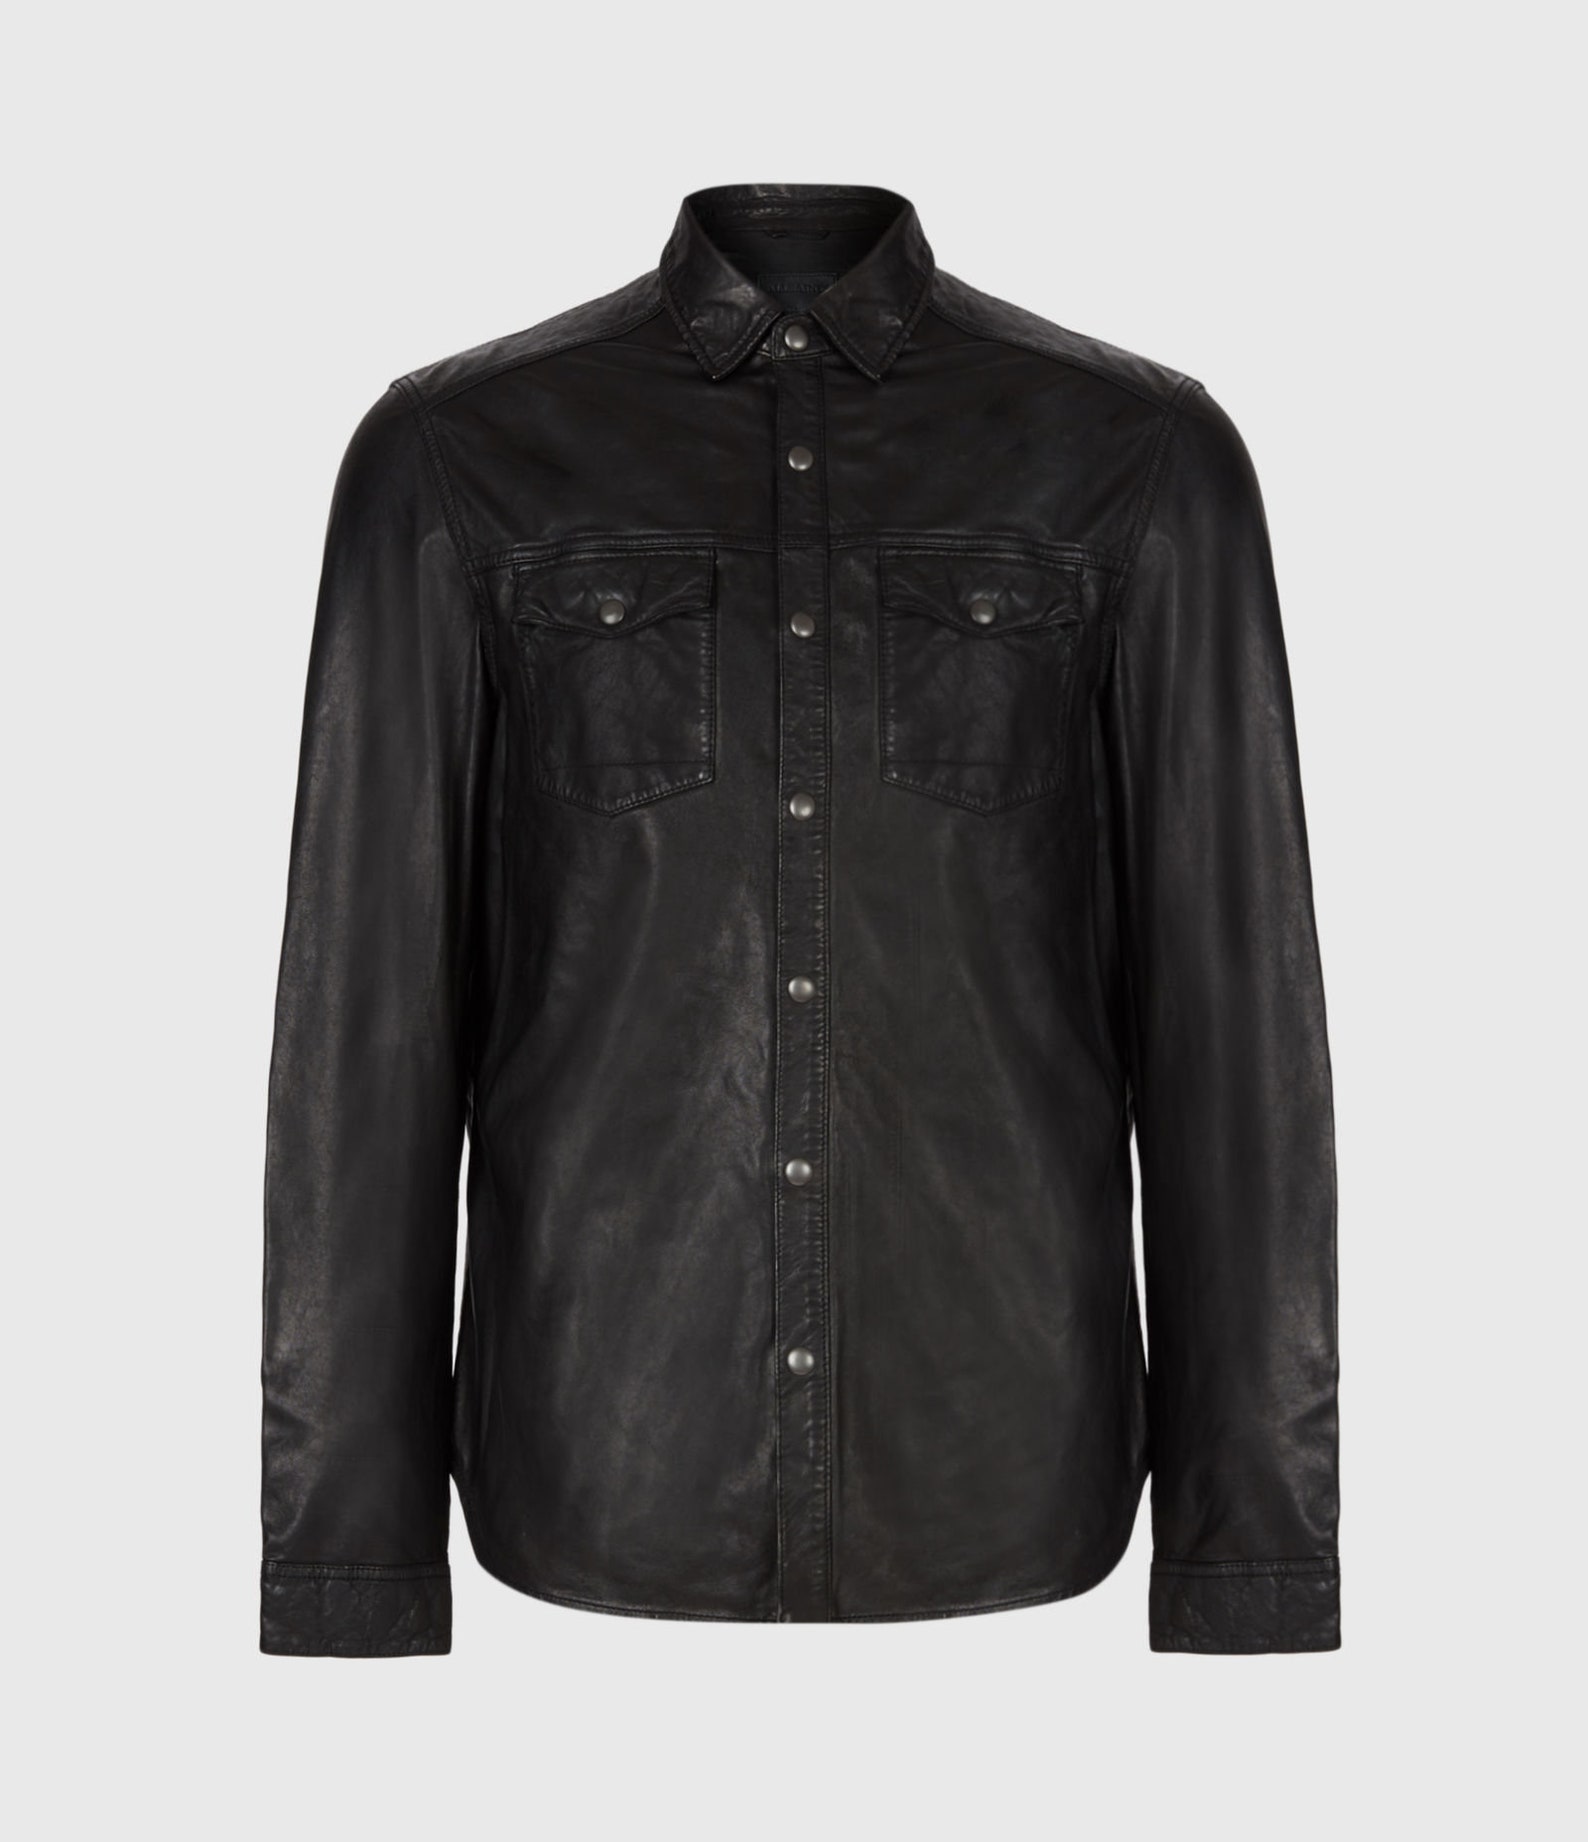 Mens Leather Shirt / Soft Leather Shirt / Vintage Jacket / | Etsy